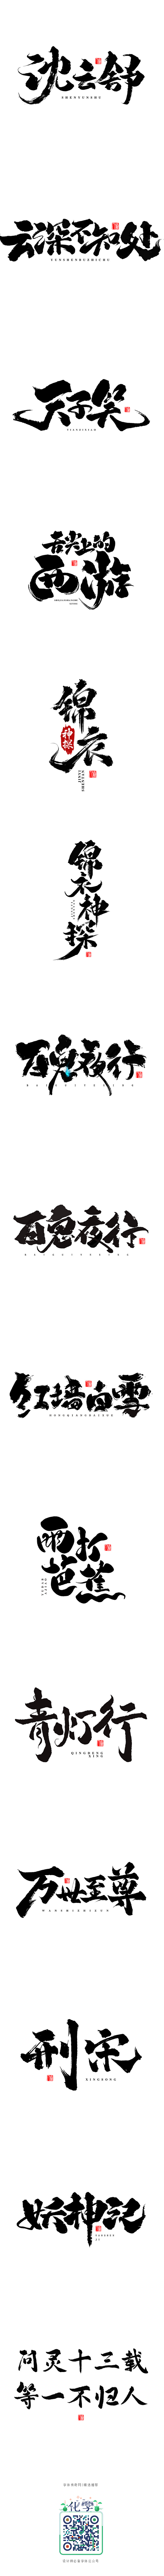 板写字形探索-字体传奇网-中国首个字体品...